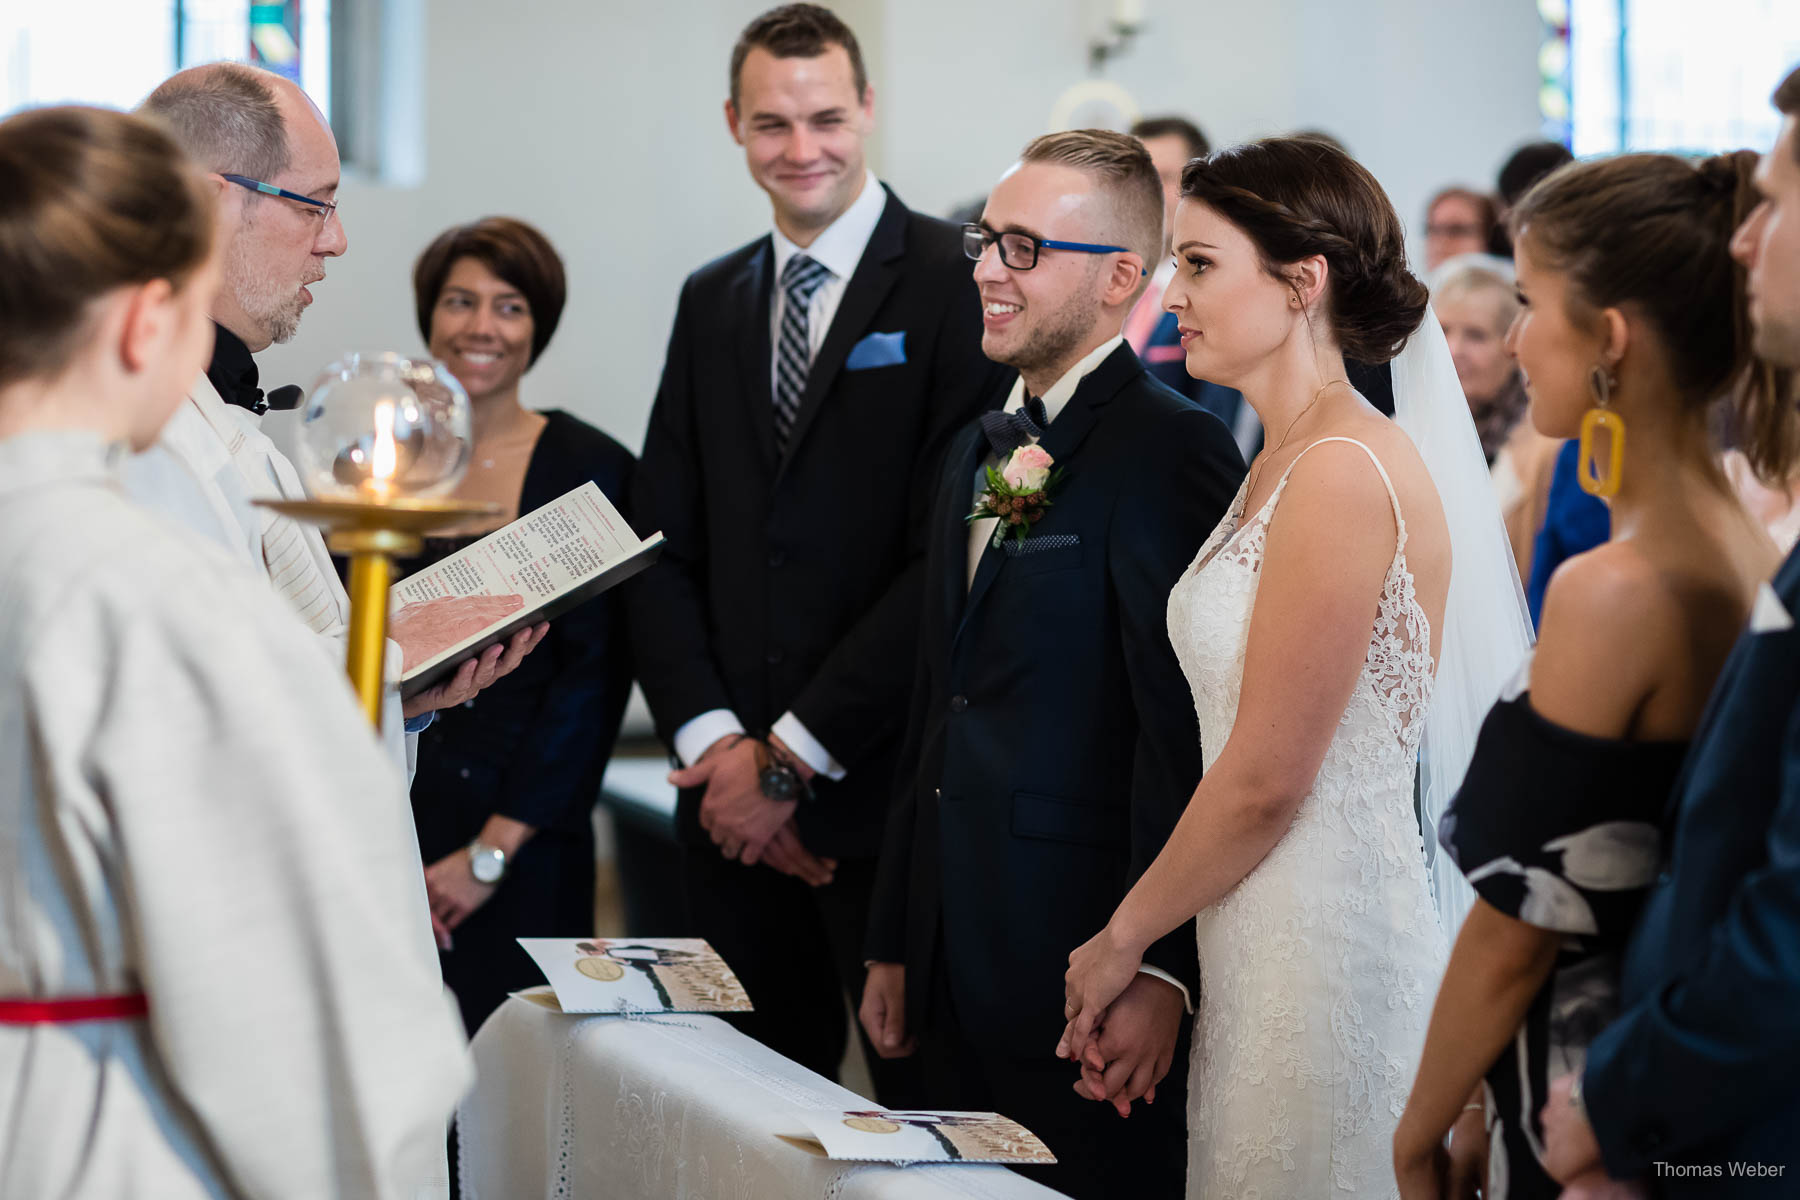 Kirchliche Hochzeit in Wildeshausen, Hochzeitsfotograf Wildeshausen, Thomas Weber